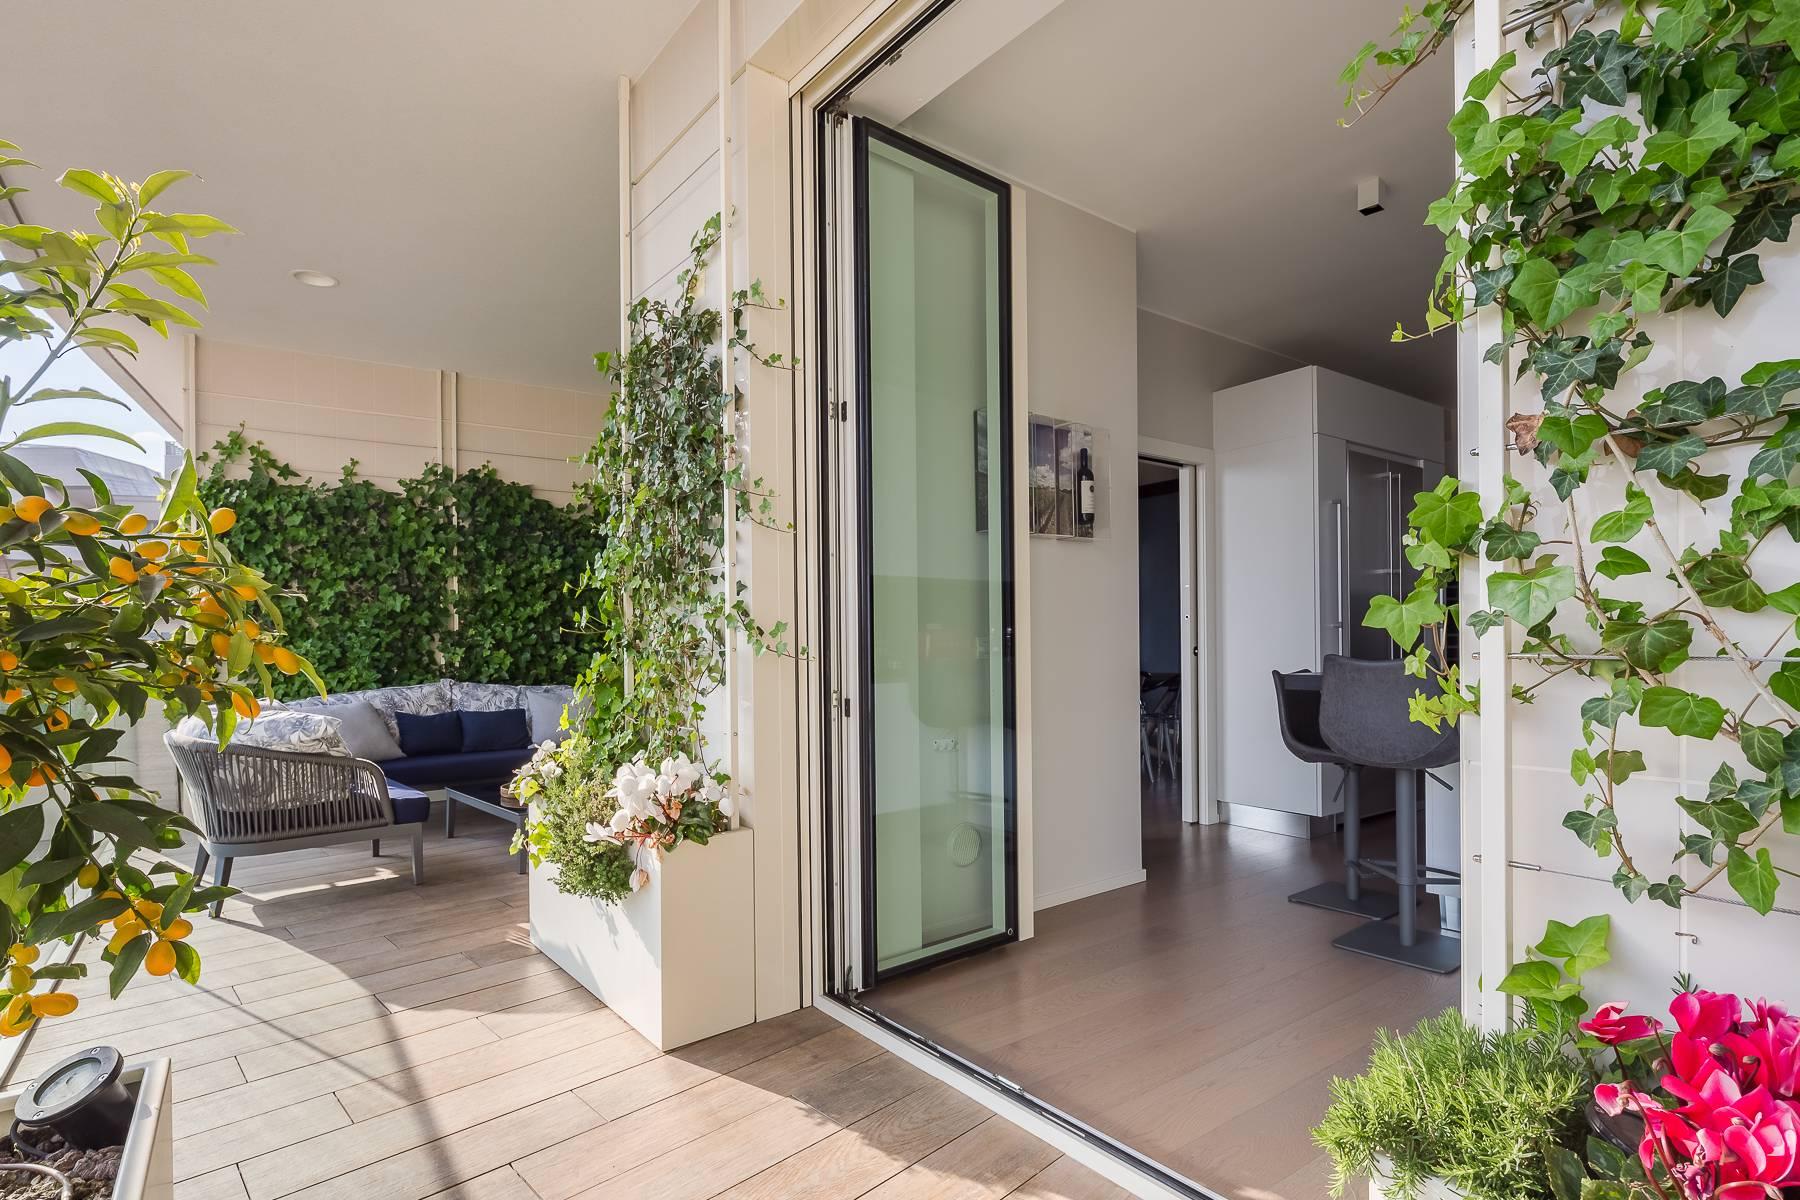 Wunderschöne möblierte Design-Wohnung mit Terrassen im CitylIfe Stadtviertel - 38